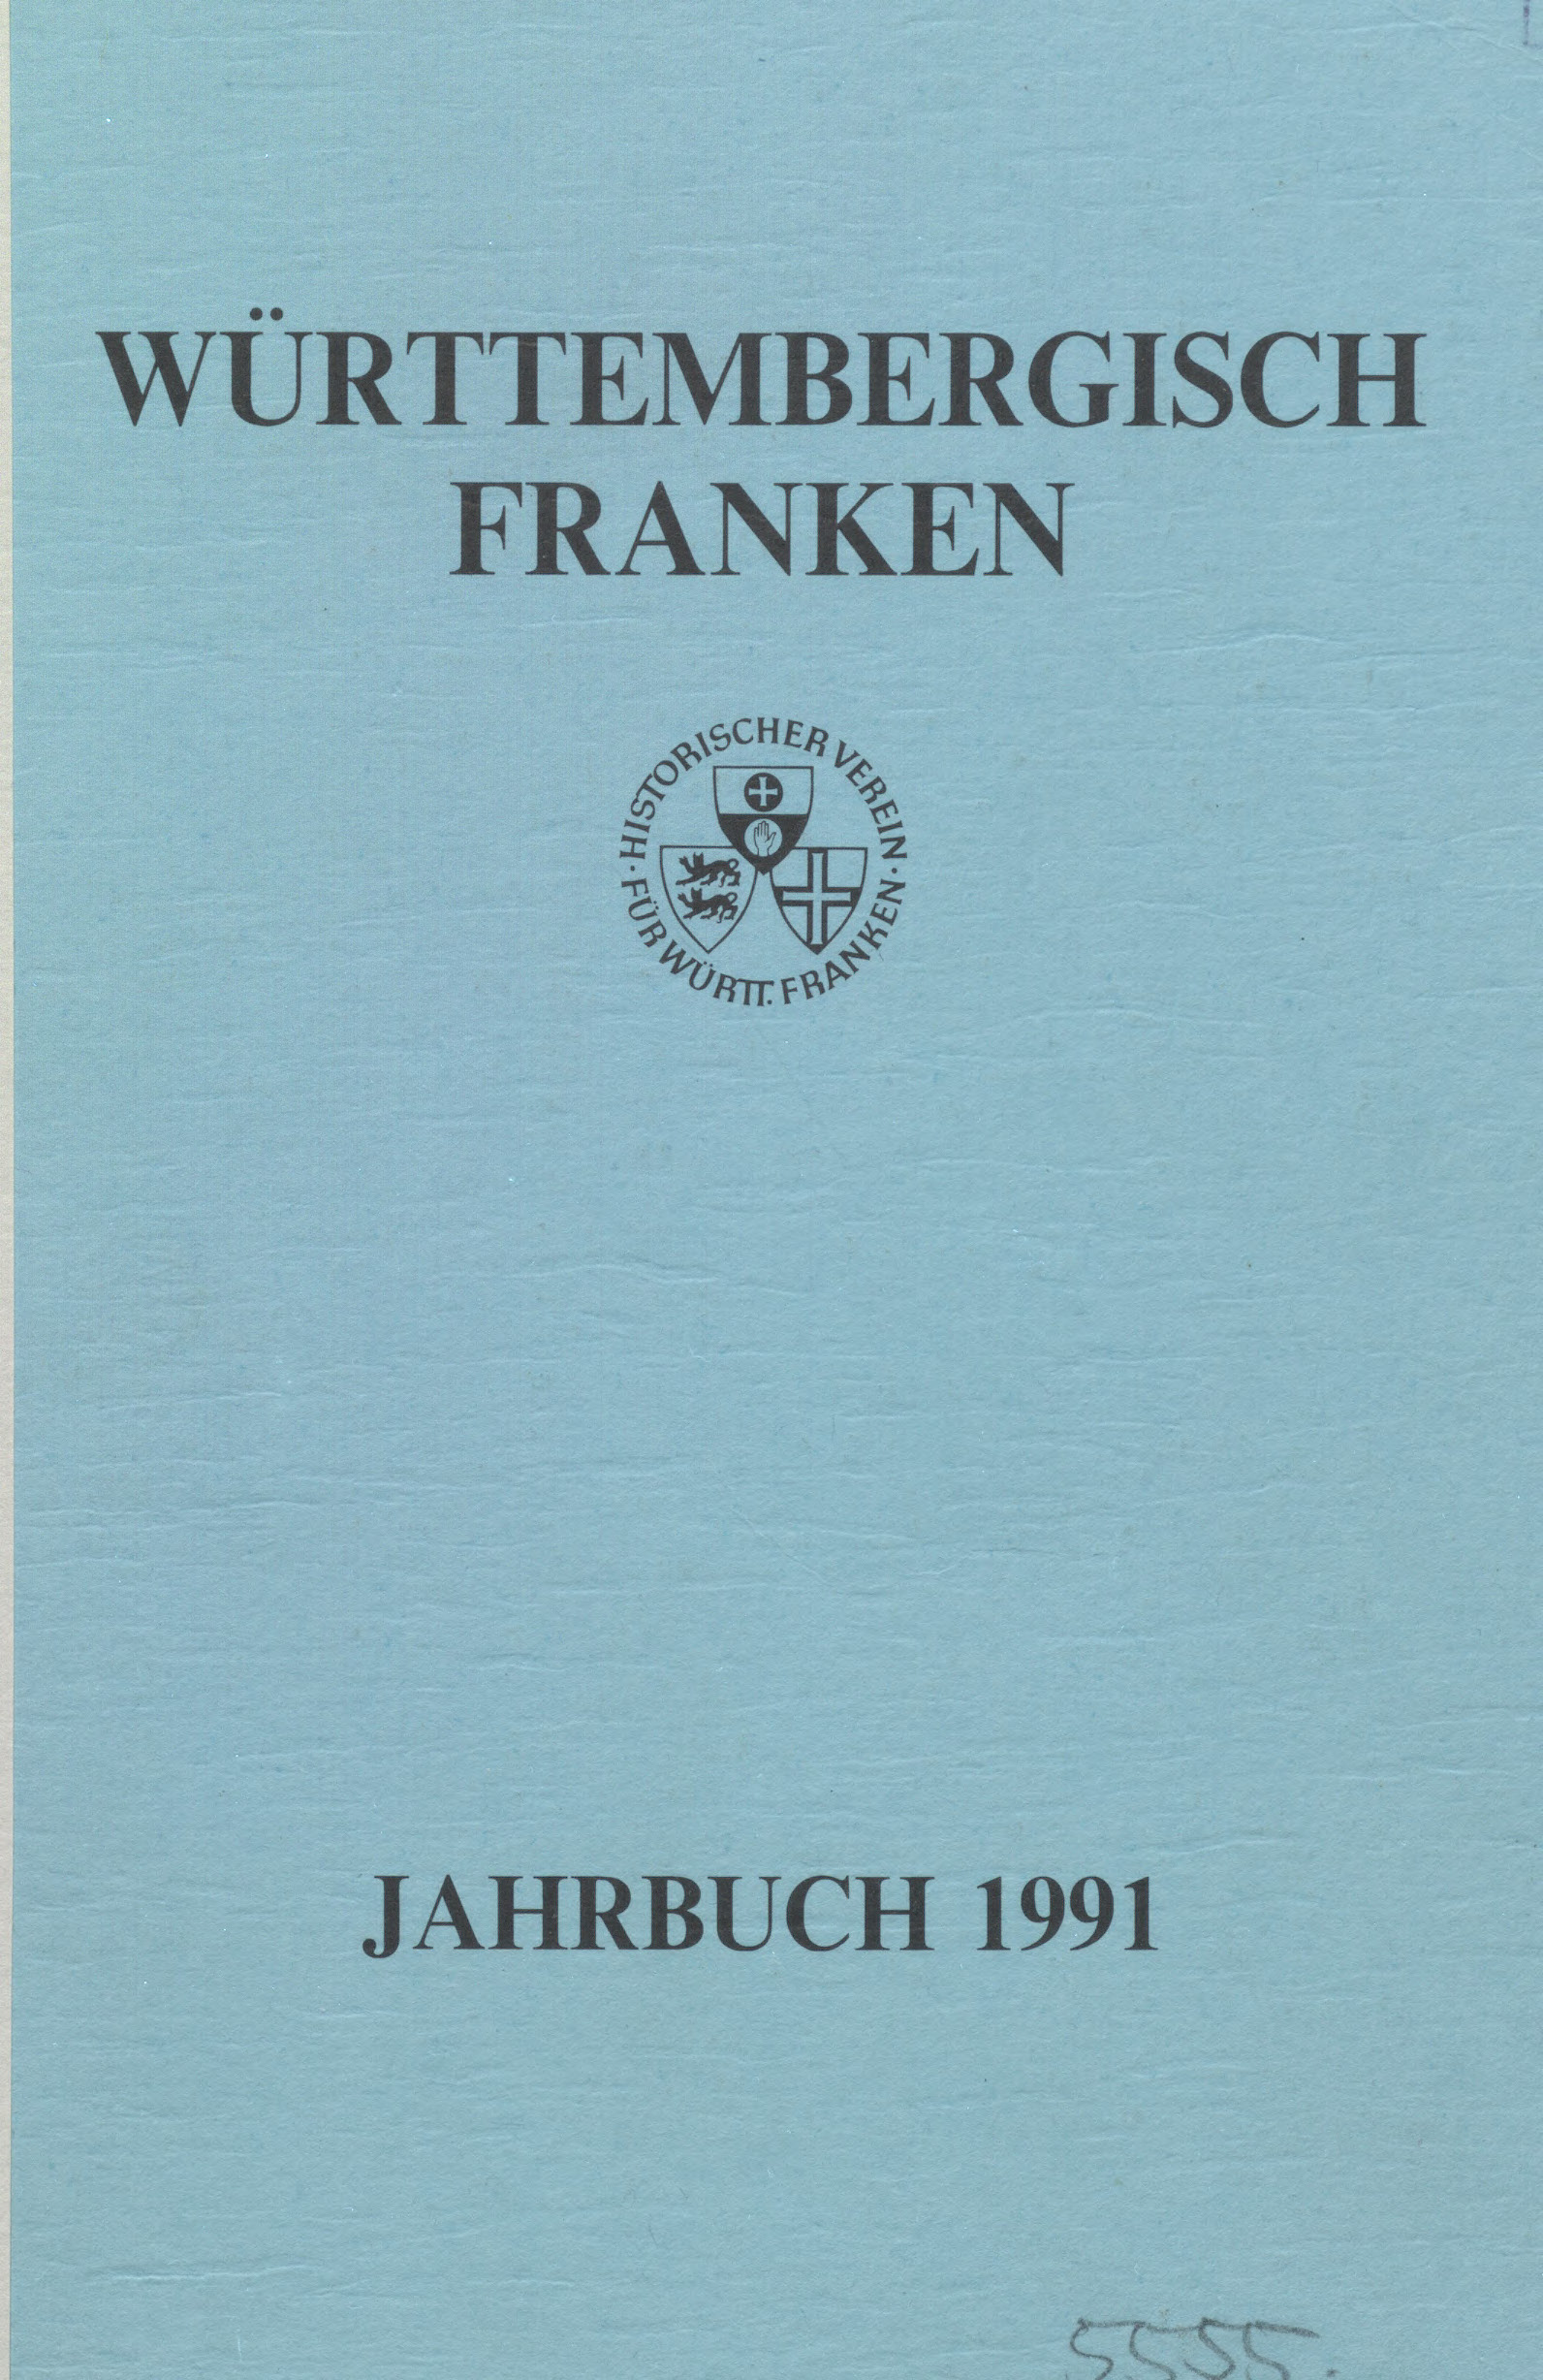                     Ansehen Bd. 75 (1991): Württembergisch Franken
                